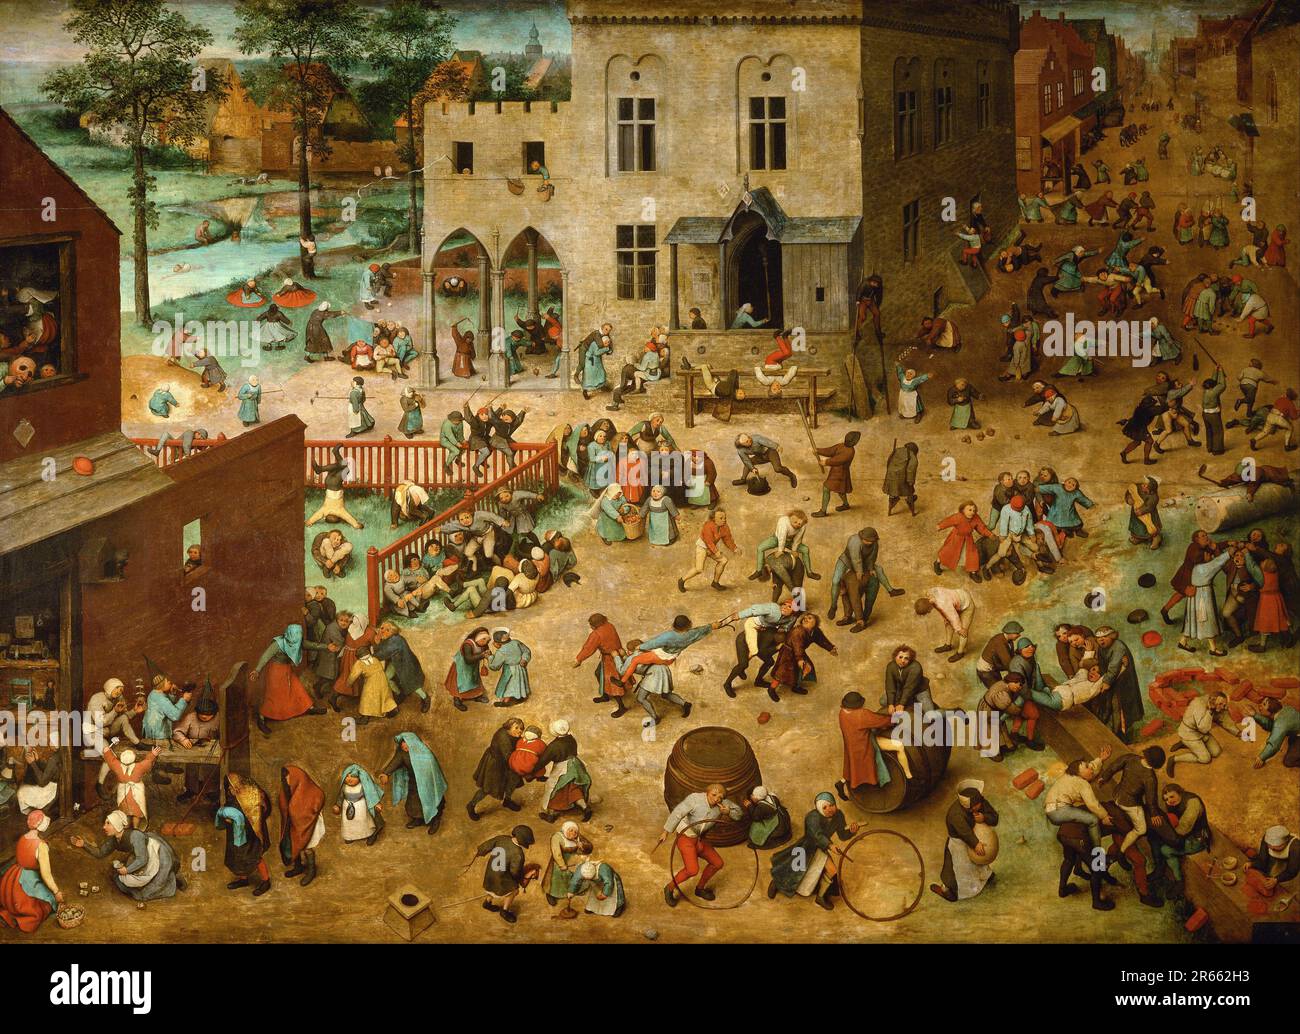 Giochi per bambini dipinti dal pittore rinascimentale olandese Pieter Breughel il Vecchio nel 1560. Breughel è stato il pittore più importante del Rinascimento olandese e fiammingo. La sua scelta di soggetti fu influente, rifiutò ritratti e scene religiose a favore di scene locali e contadine. Foto Stock